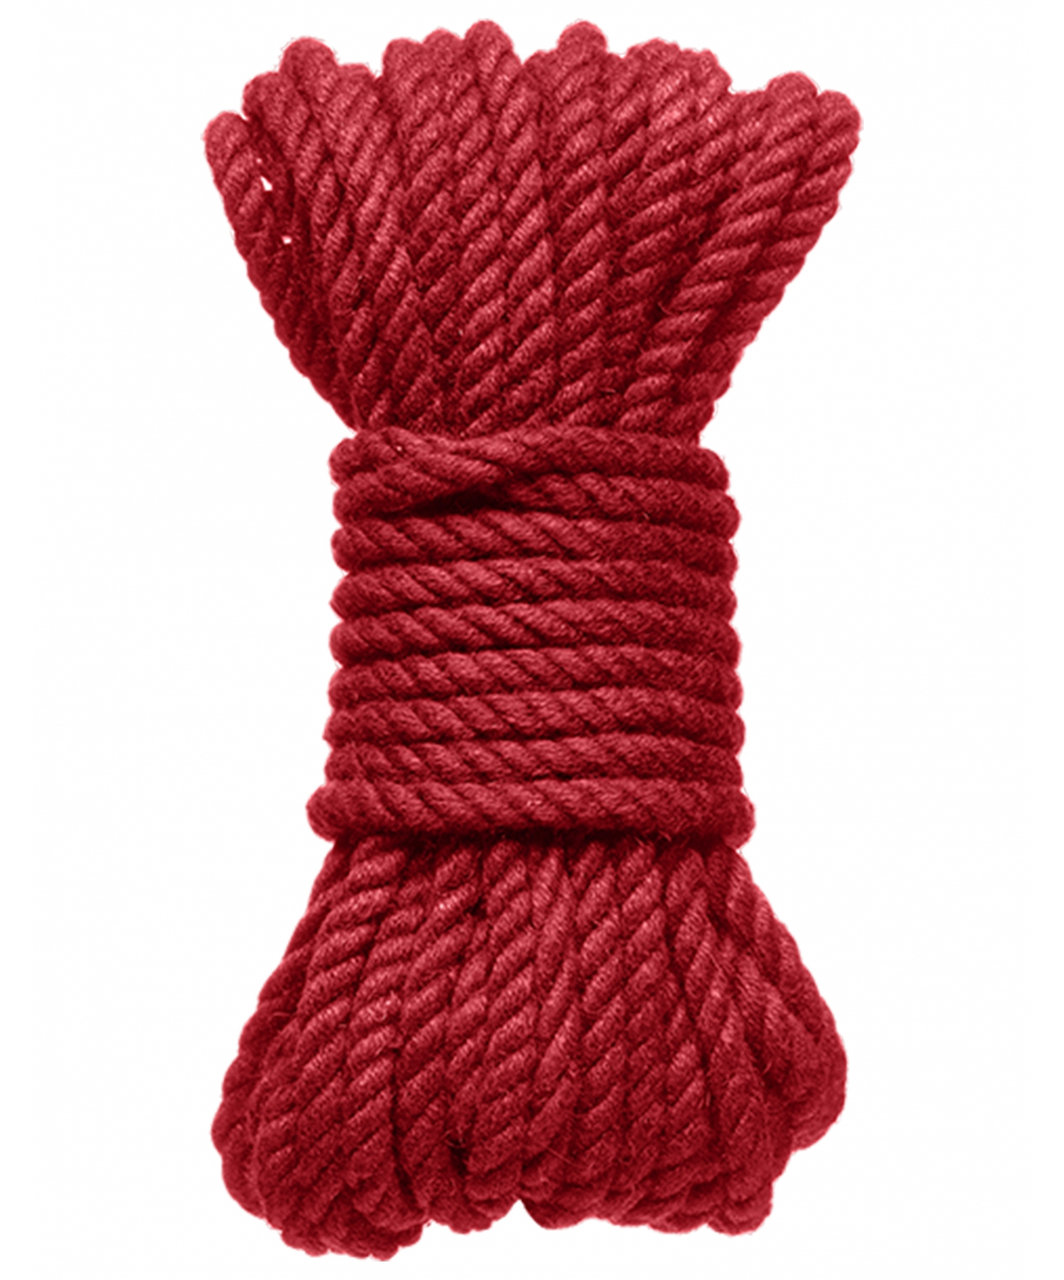 Kink sarkana kaņepju šķiedras virve (9 m)